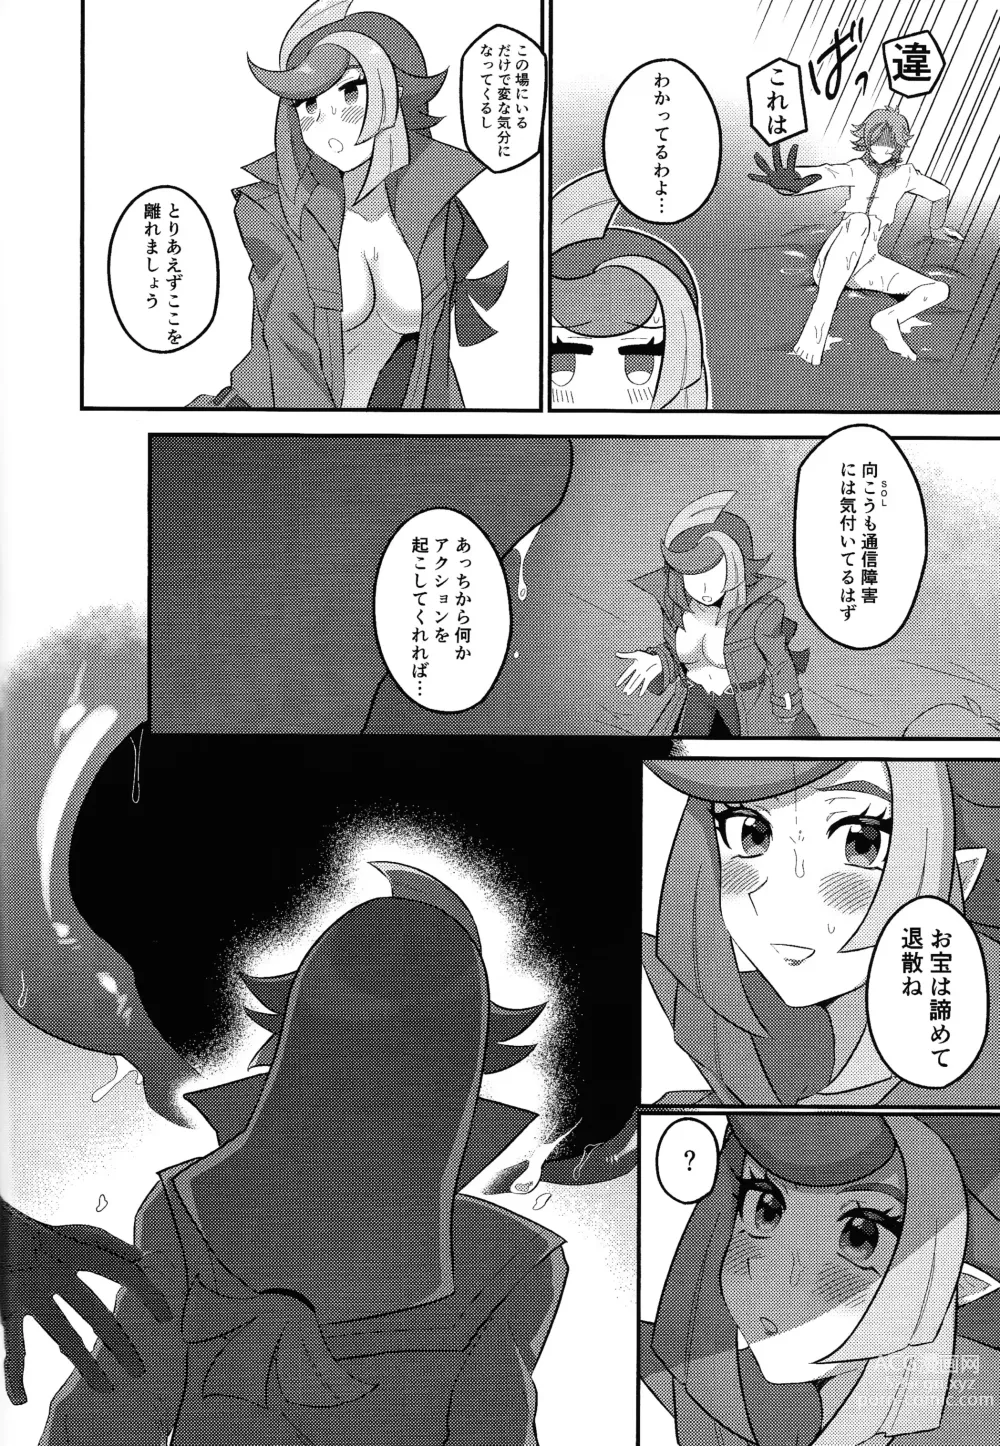 Page 11 of doujinshi Sennyuu Ero Trap World